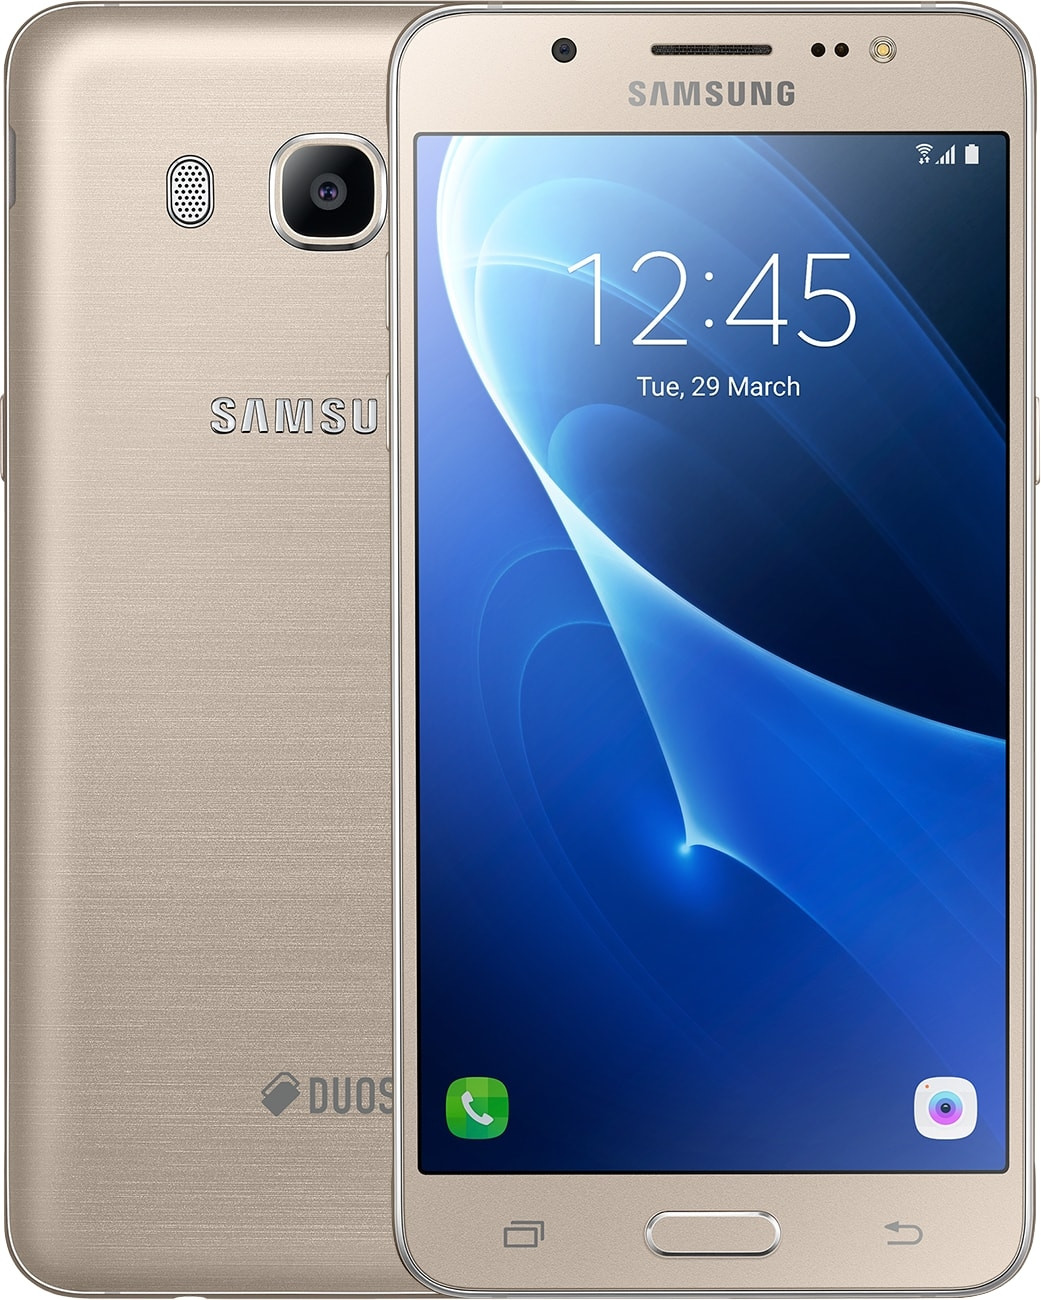 Samsung Galaxy J3 как сделать скриншот и сохранить снимок с экрана.